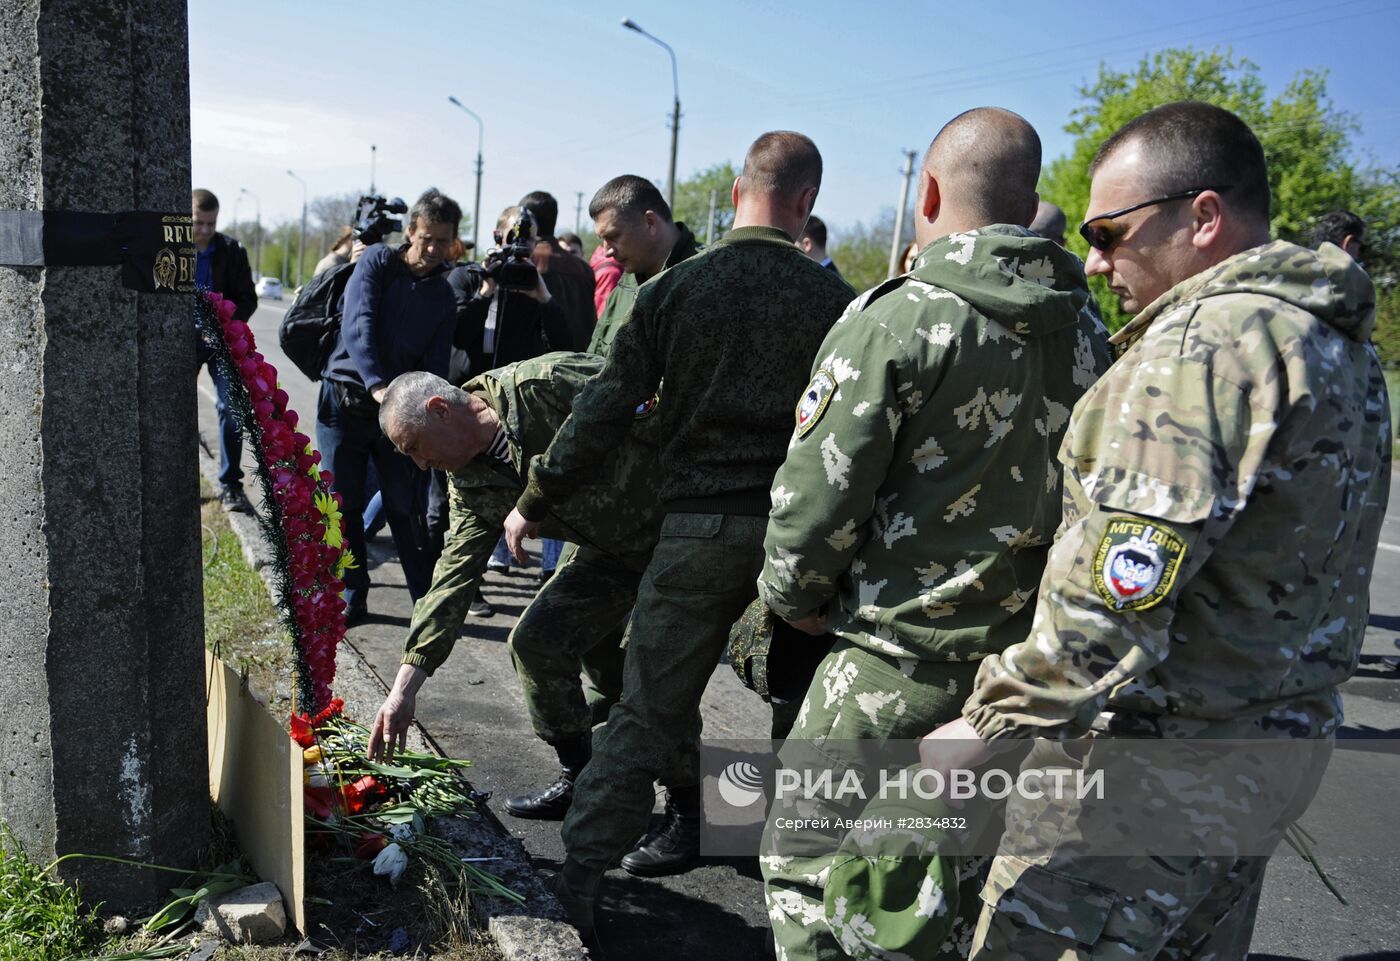 Панихида в память погибших на КПП "Еленовка" в ДНР